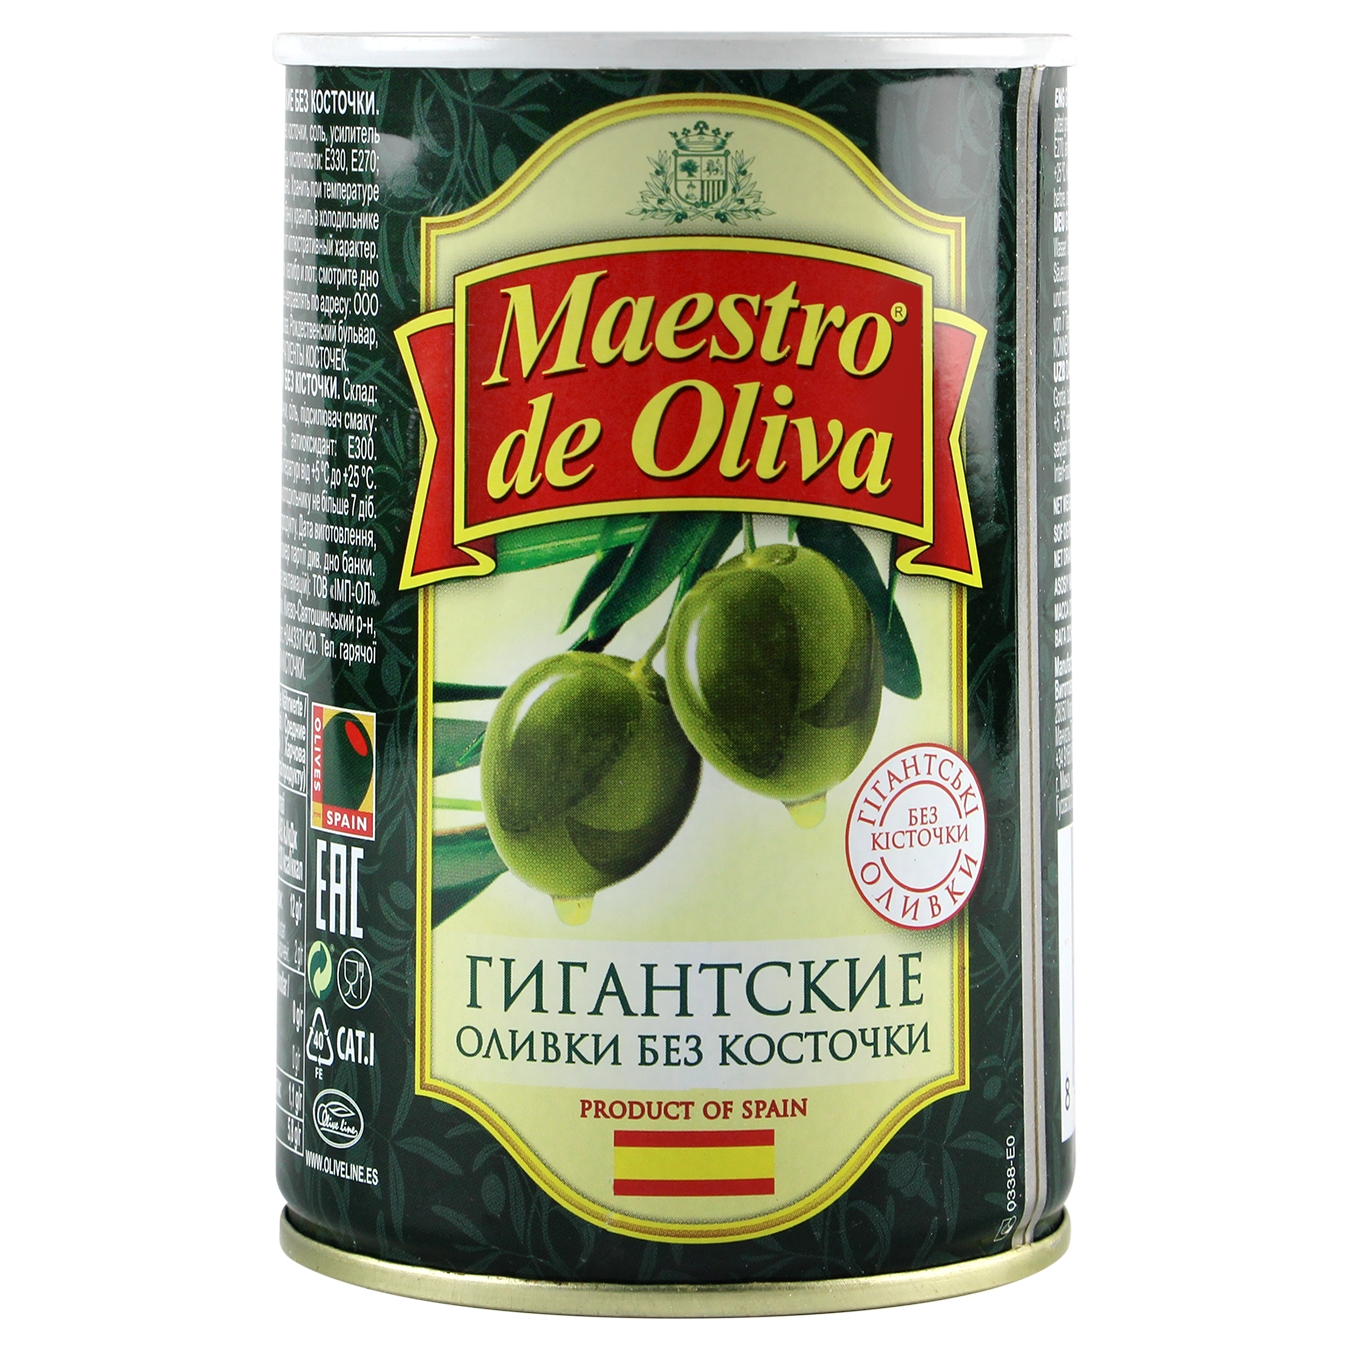 Оливки Maestro de Oliva Гігантські без кісточки 432г